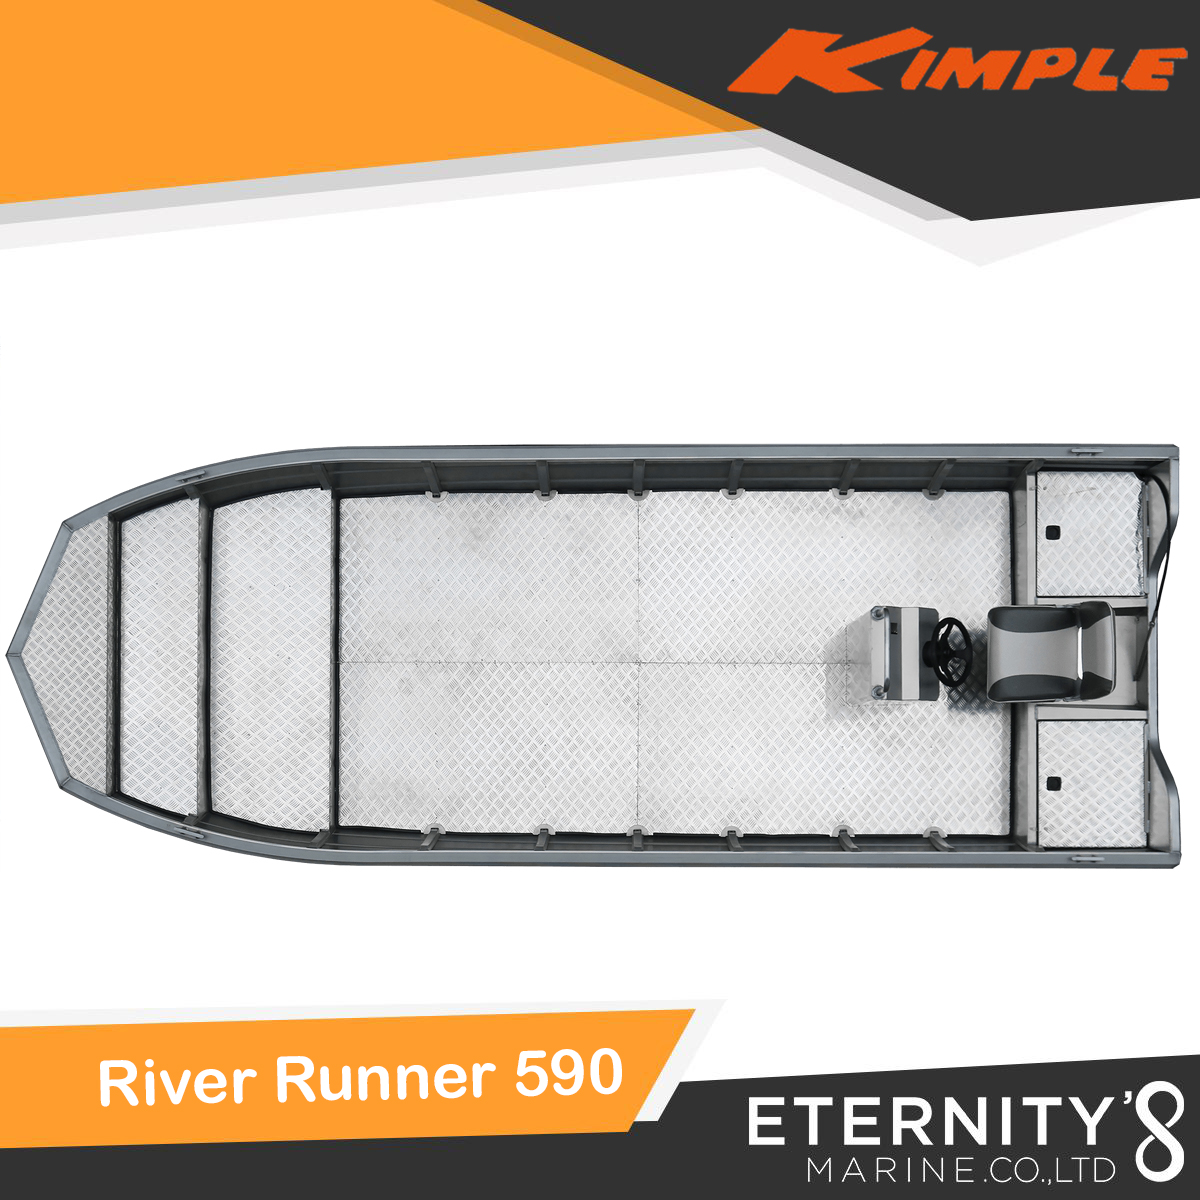 Kimple River Runner 590